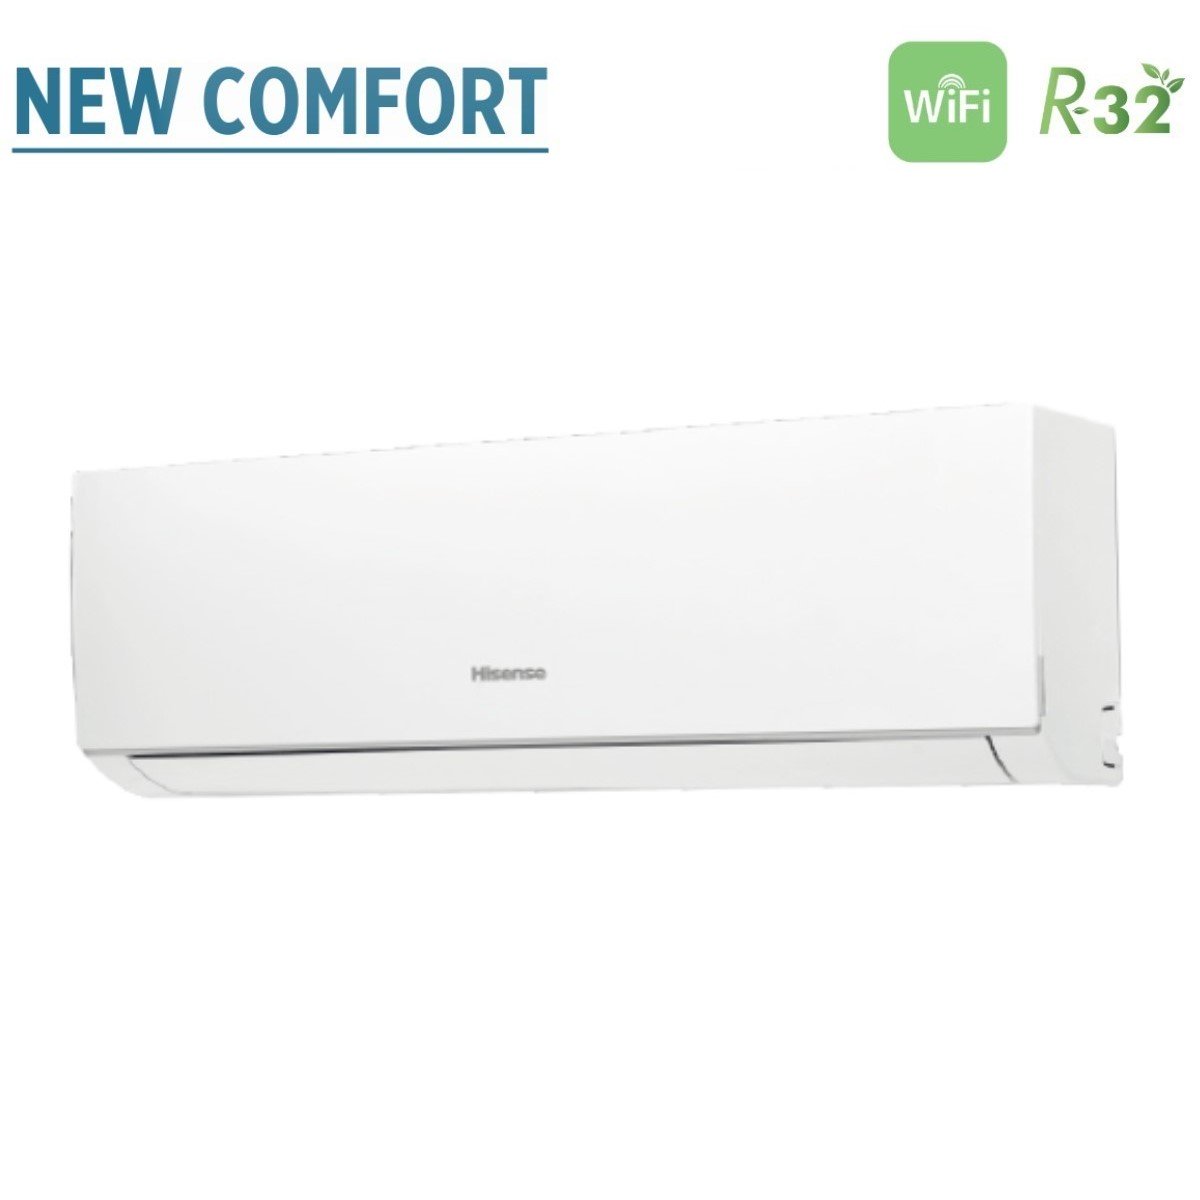 immagine-3-hisense-climatizzatore-condizionatore-hisense-trial-split-inverter-serie-new-comfort-999-con-3amw52u4rja-r-32-wi-fi-optional-900090009000